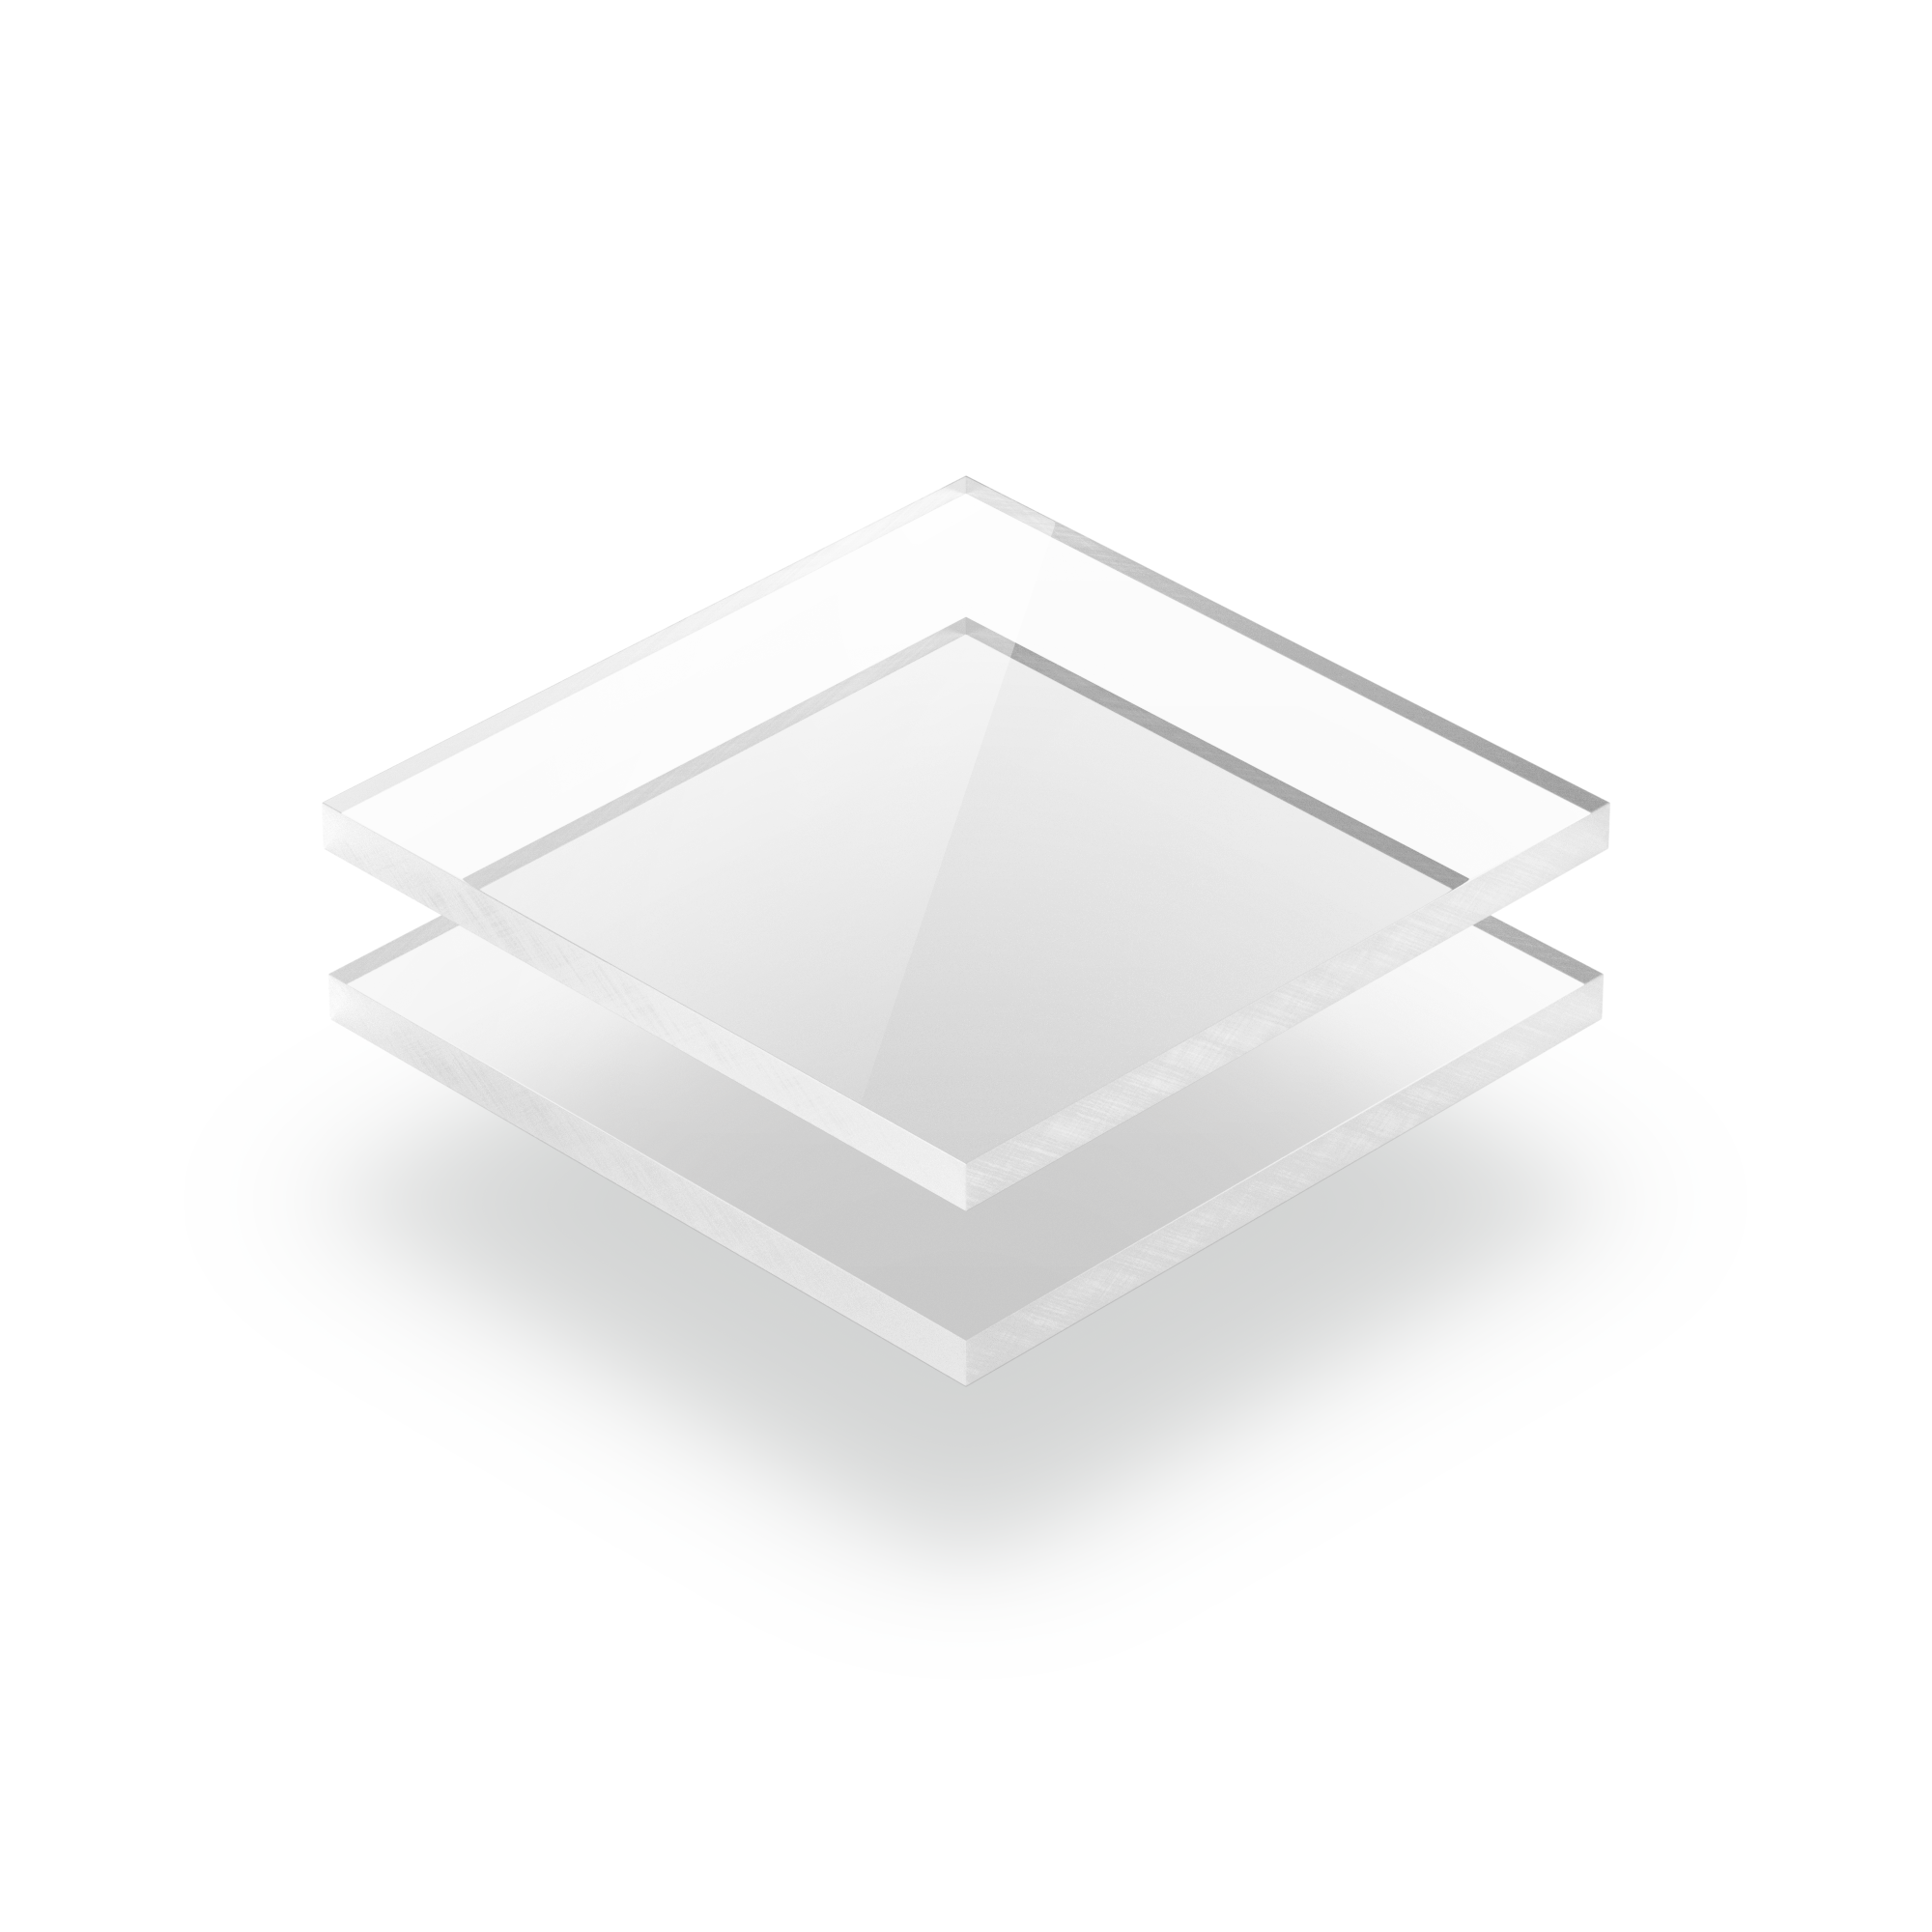 Plaque polycarbonate transparent 3mm